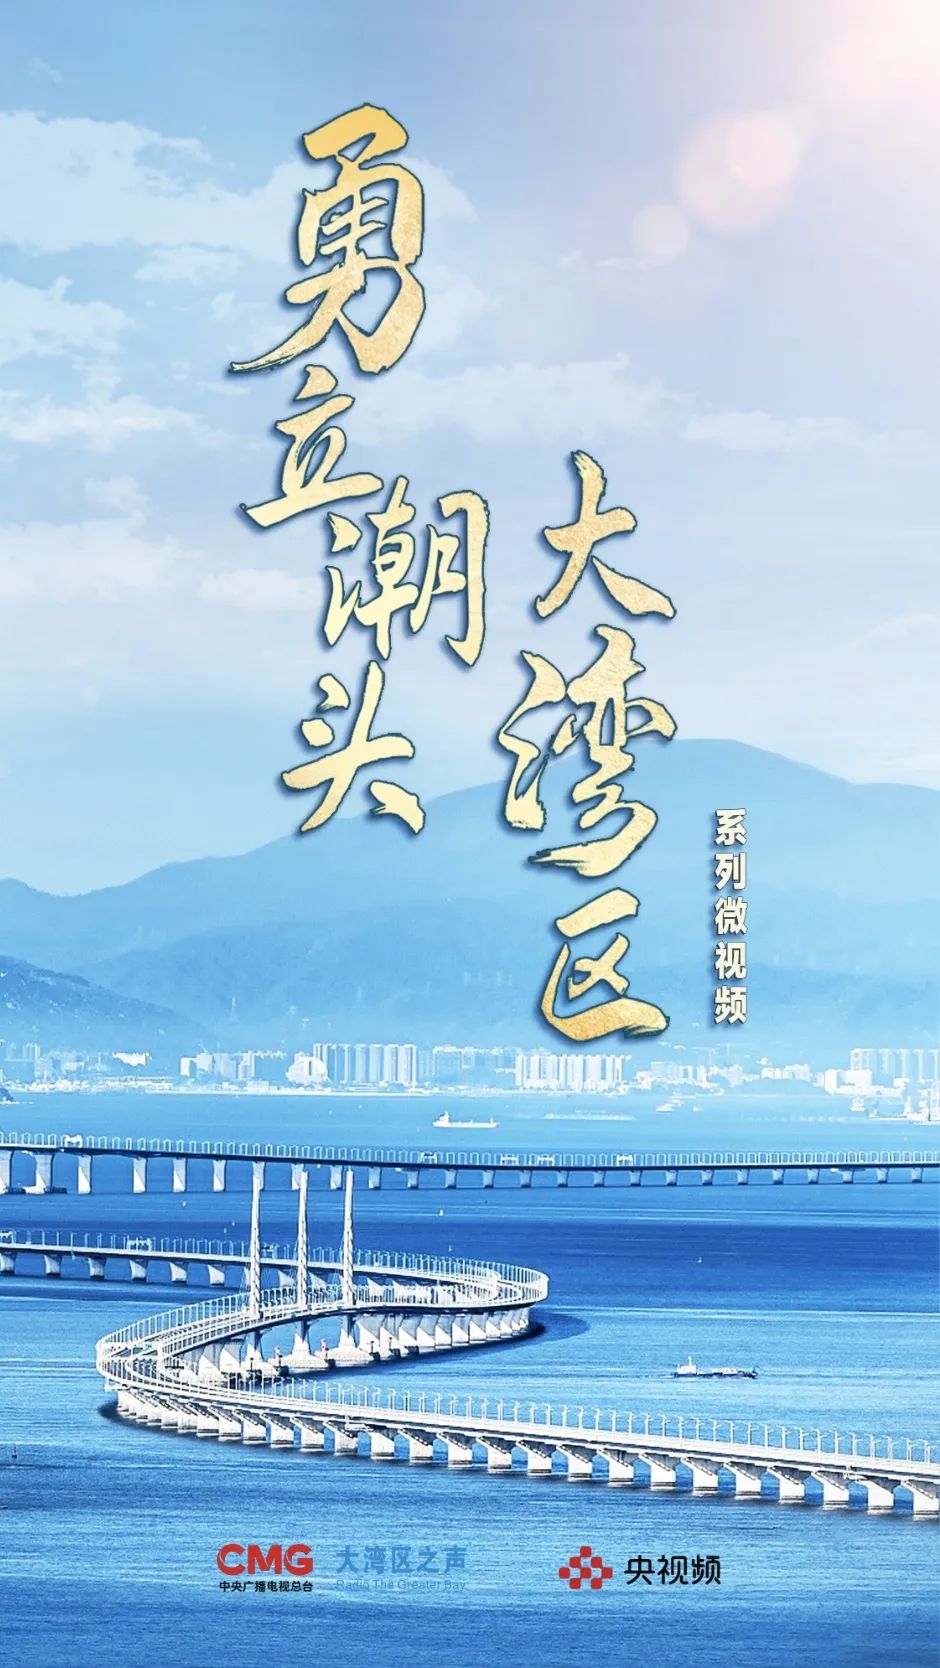 《勇立潮头大湾区》系列微视(Weishi)频今起上线